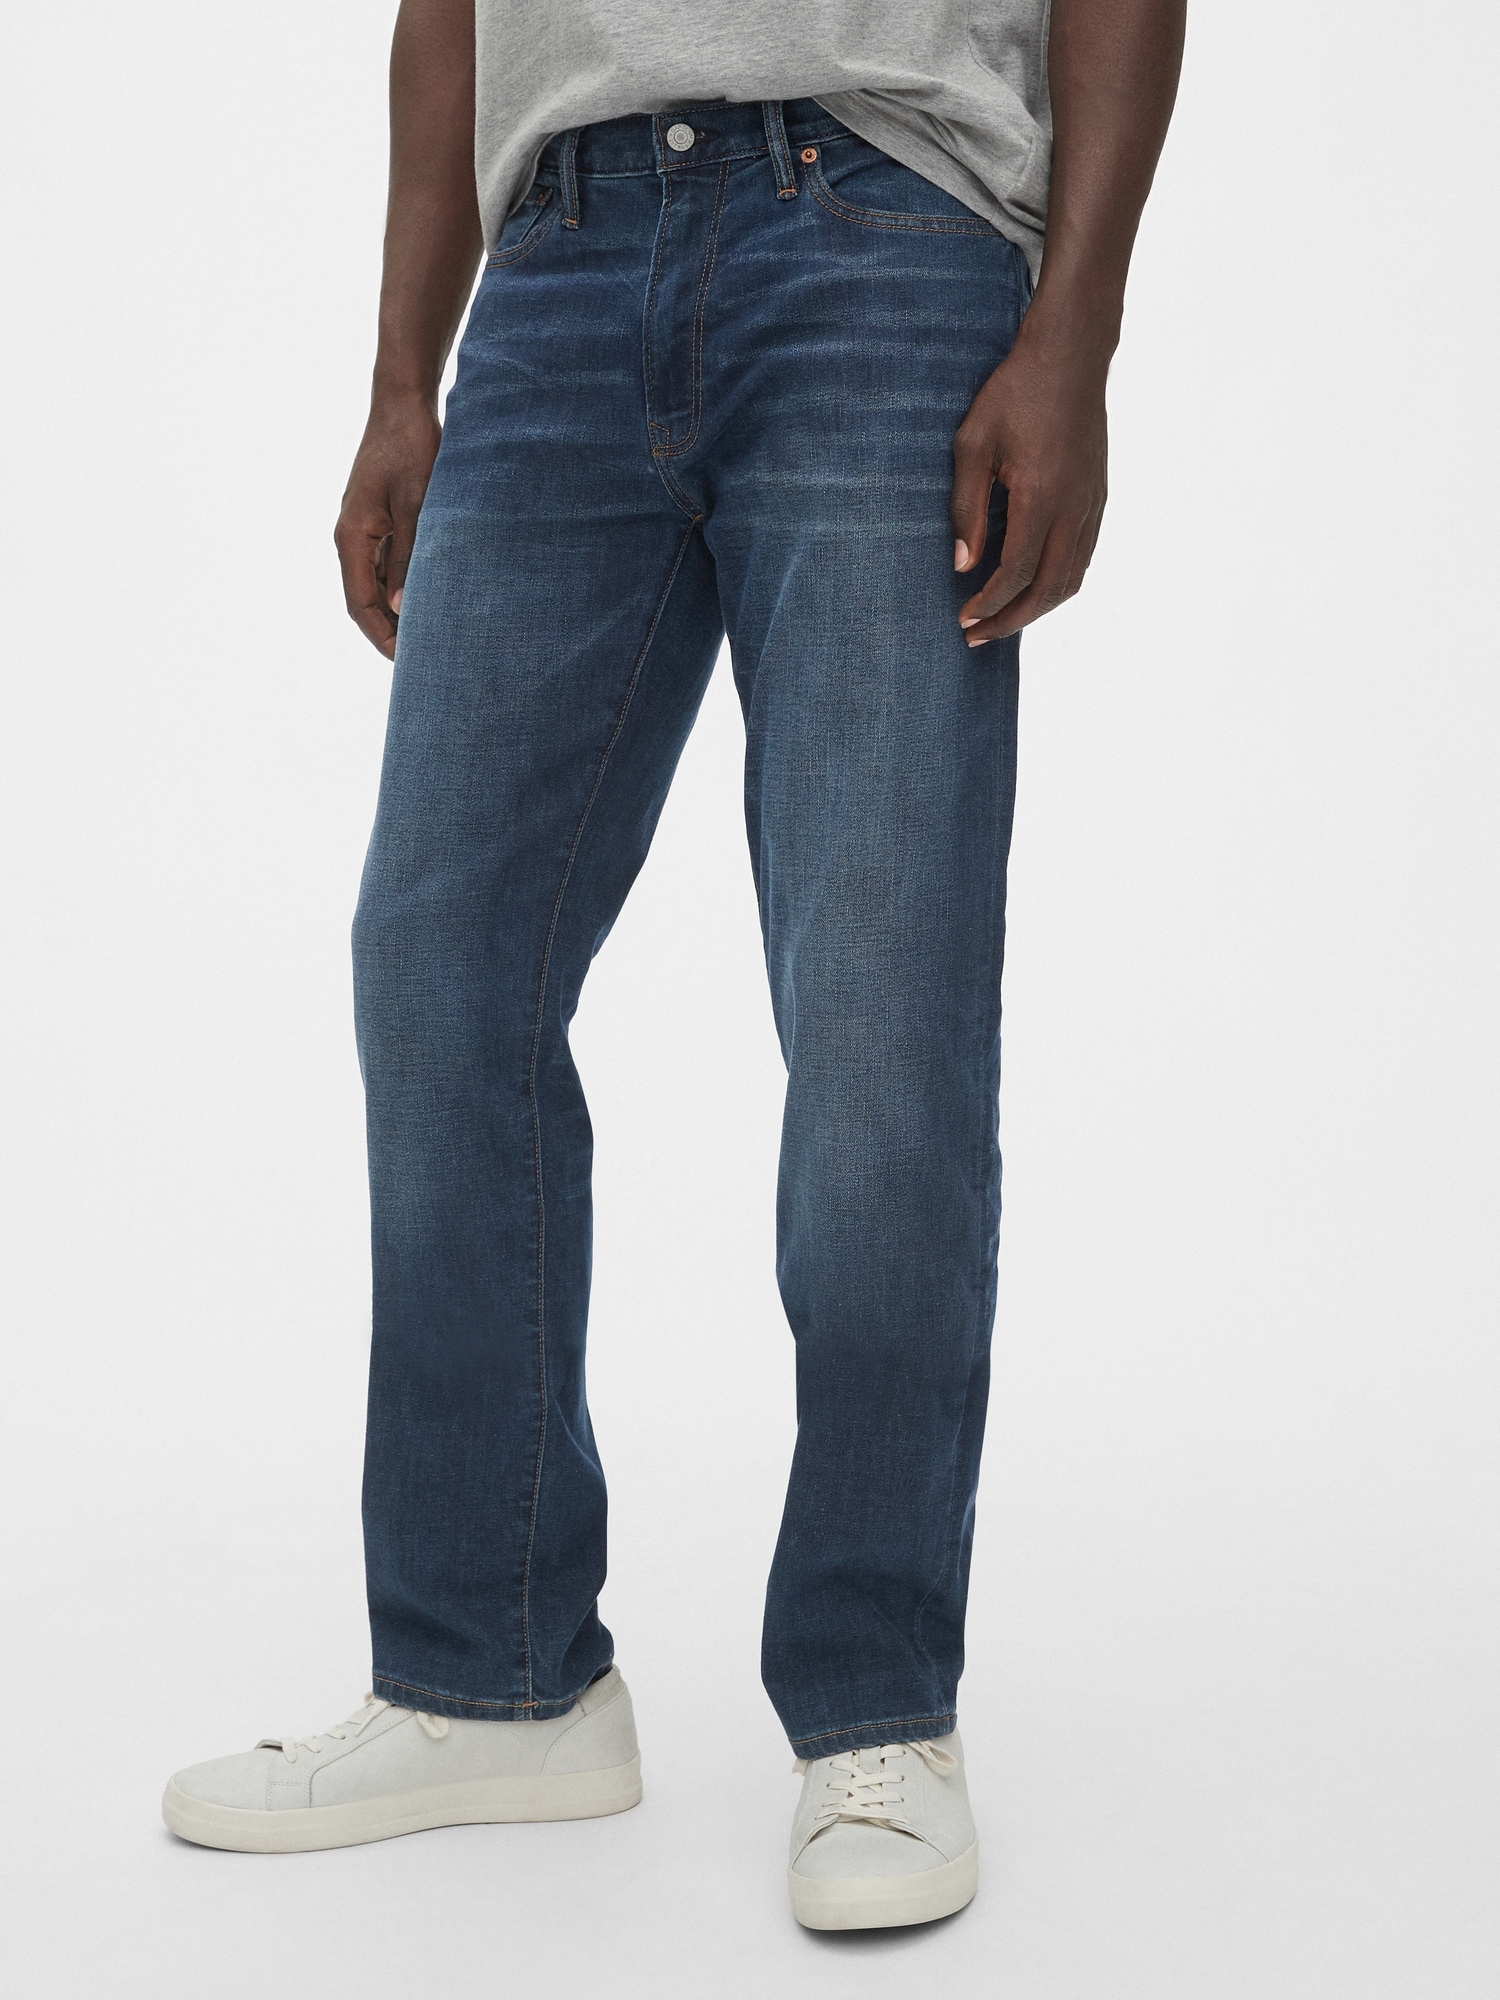 gap wearlight jeans